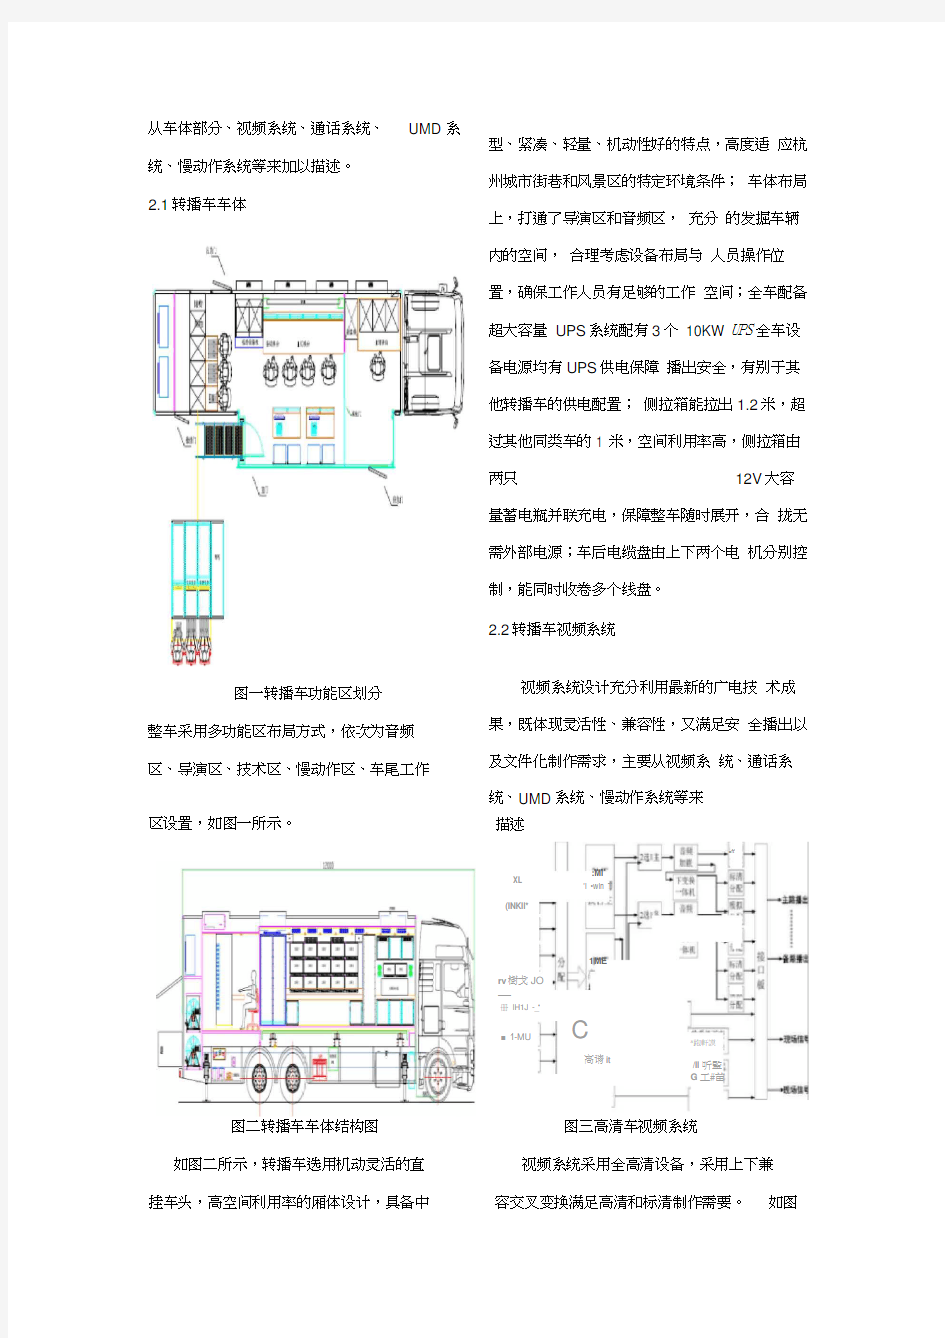 杭州电视台高清电视转播车系统架构及设计思路